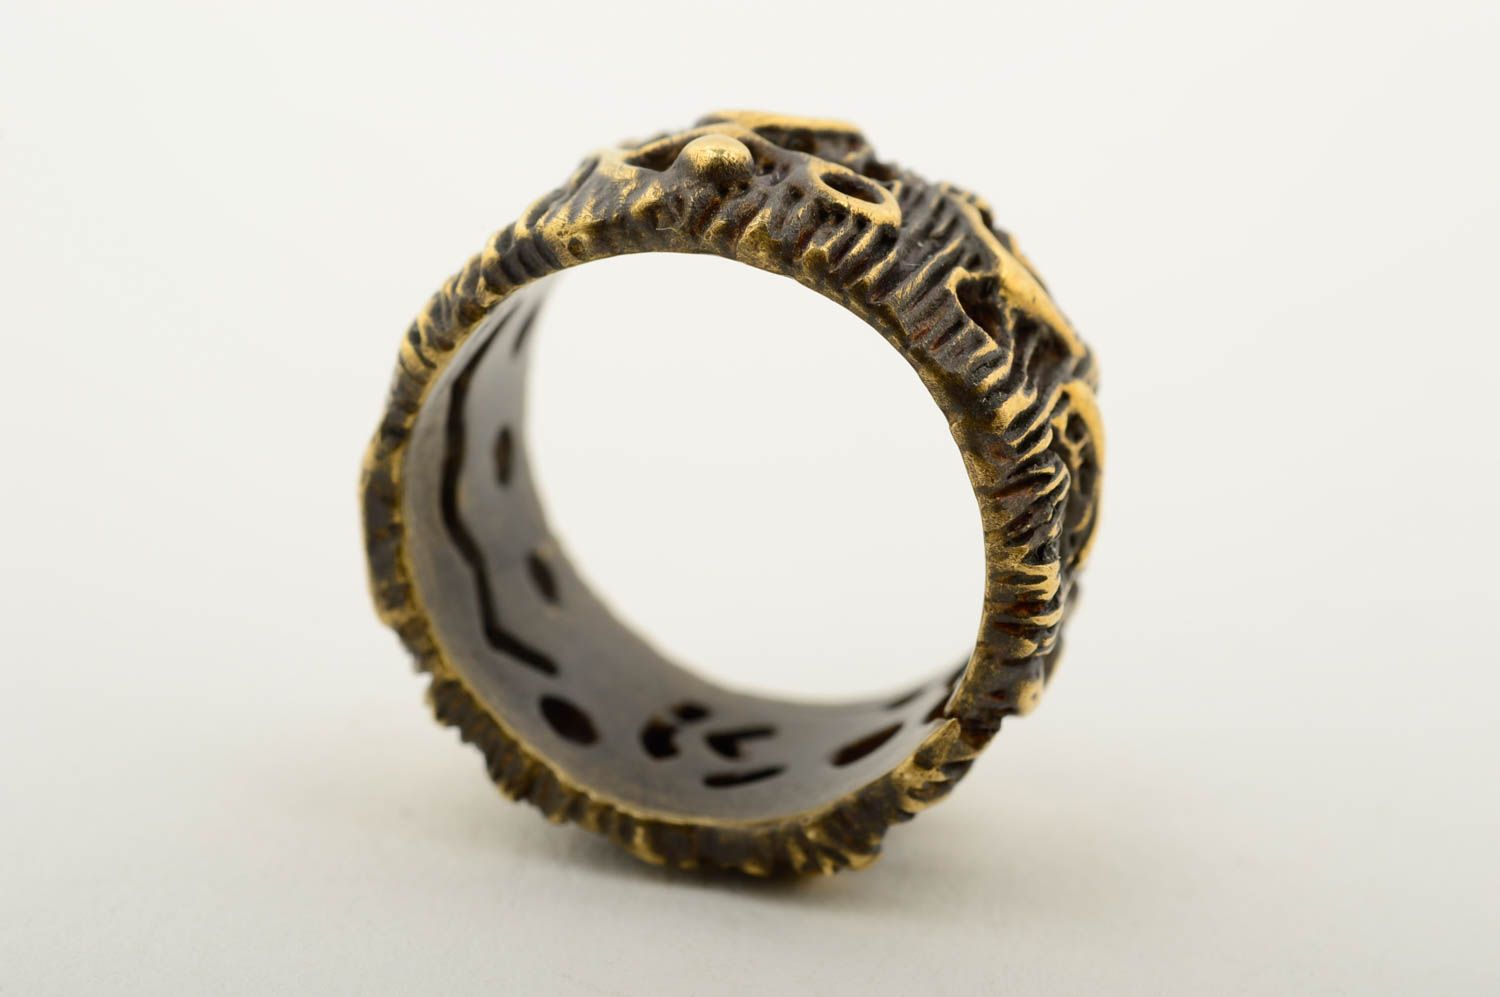 Handmade bronze ring metal ring handmade bronze jewelry fashion accessories photo 5